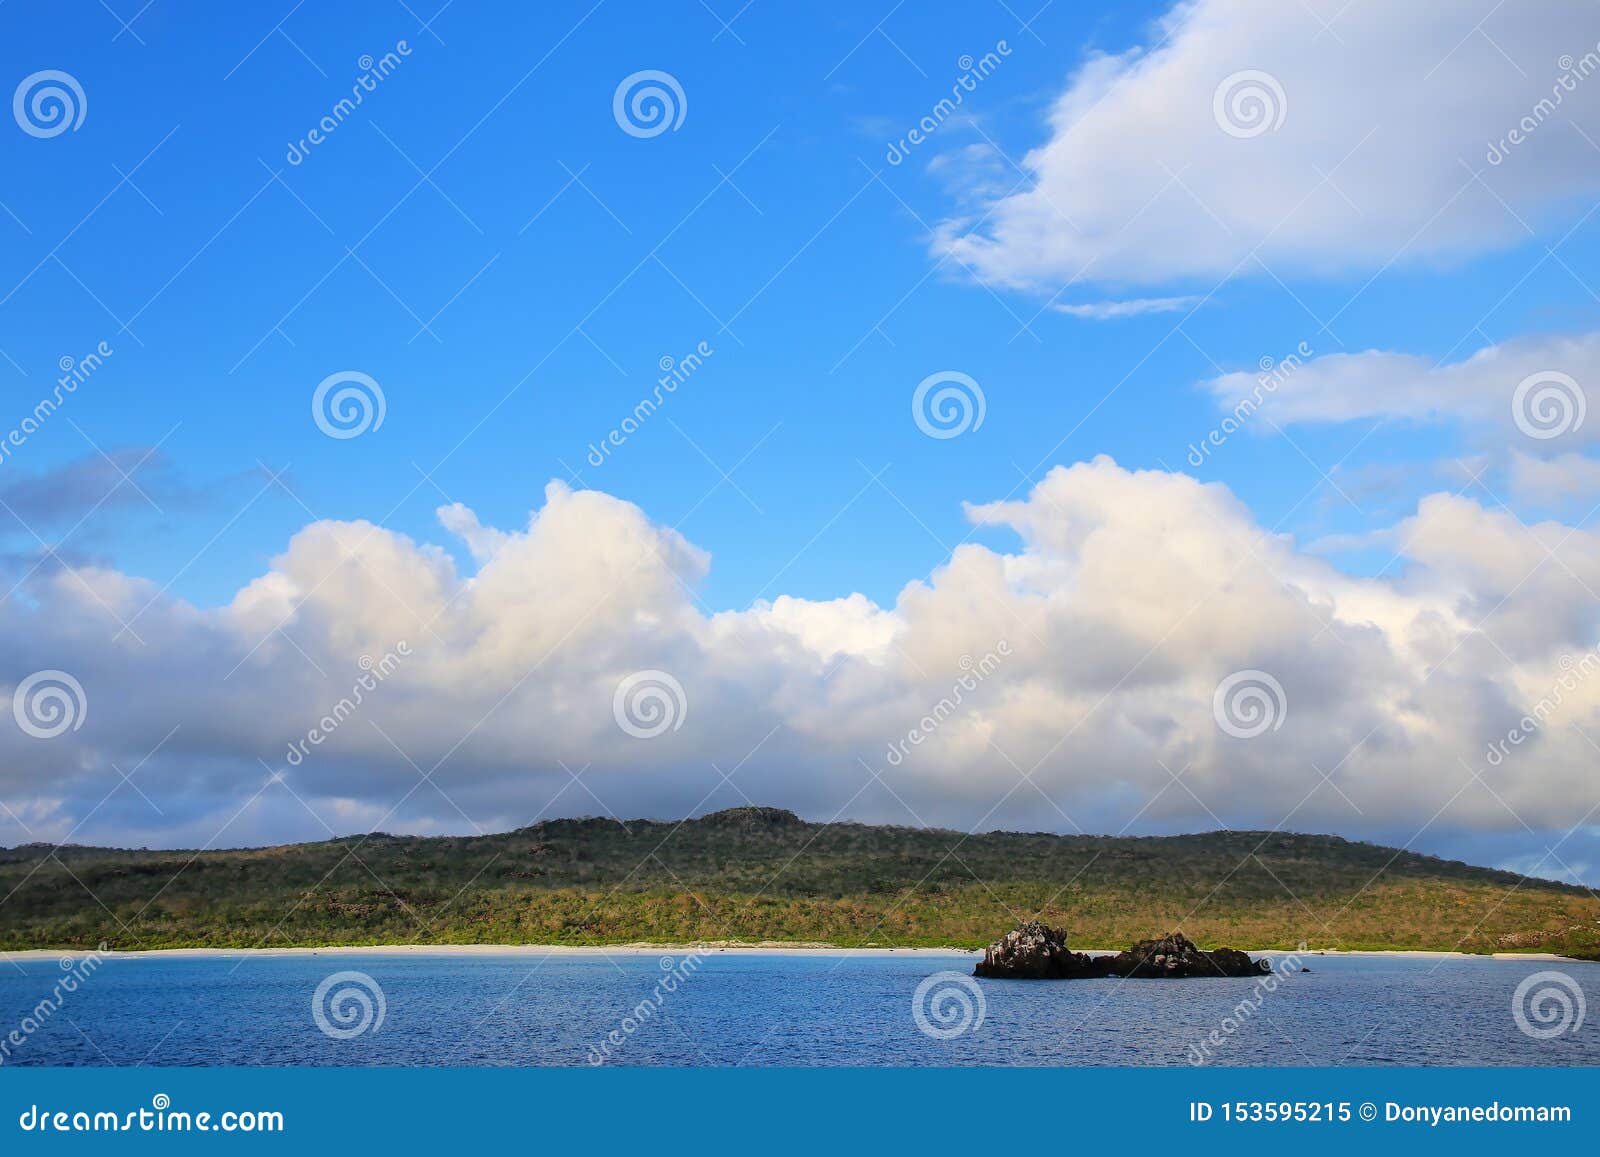 gardner bay on espanola island, galapagos national park, ecuador